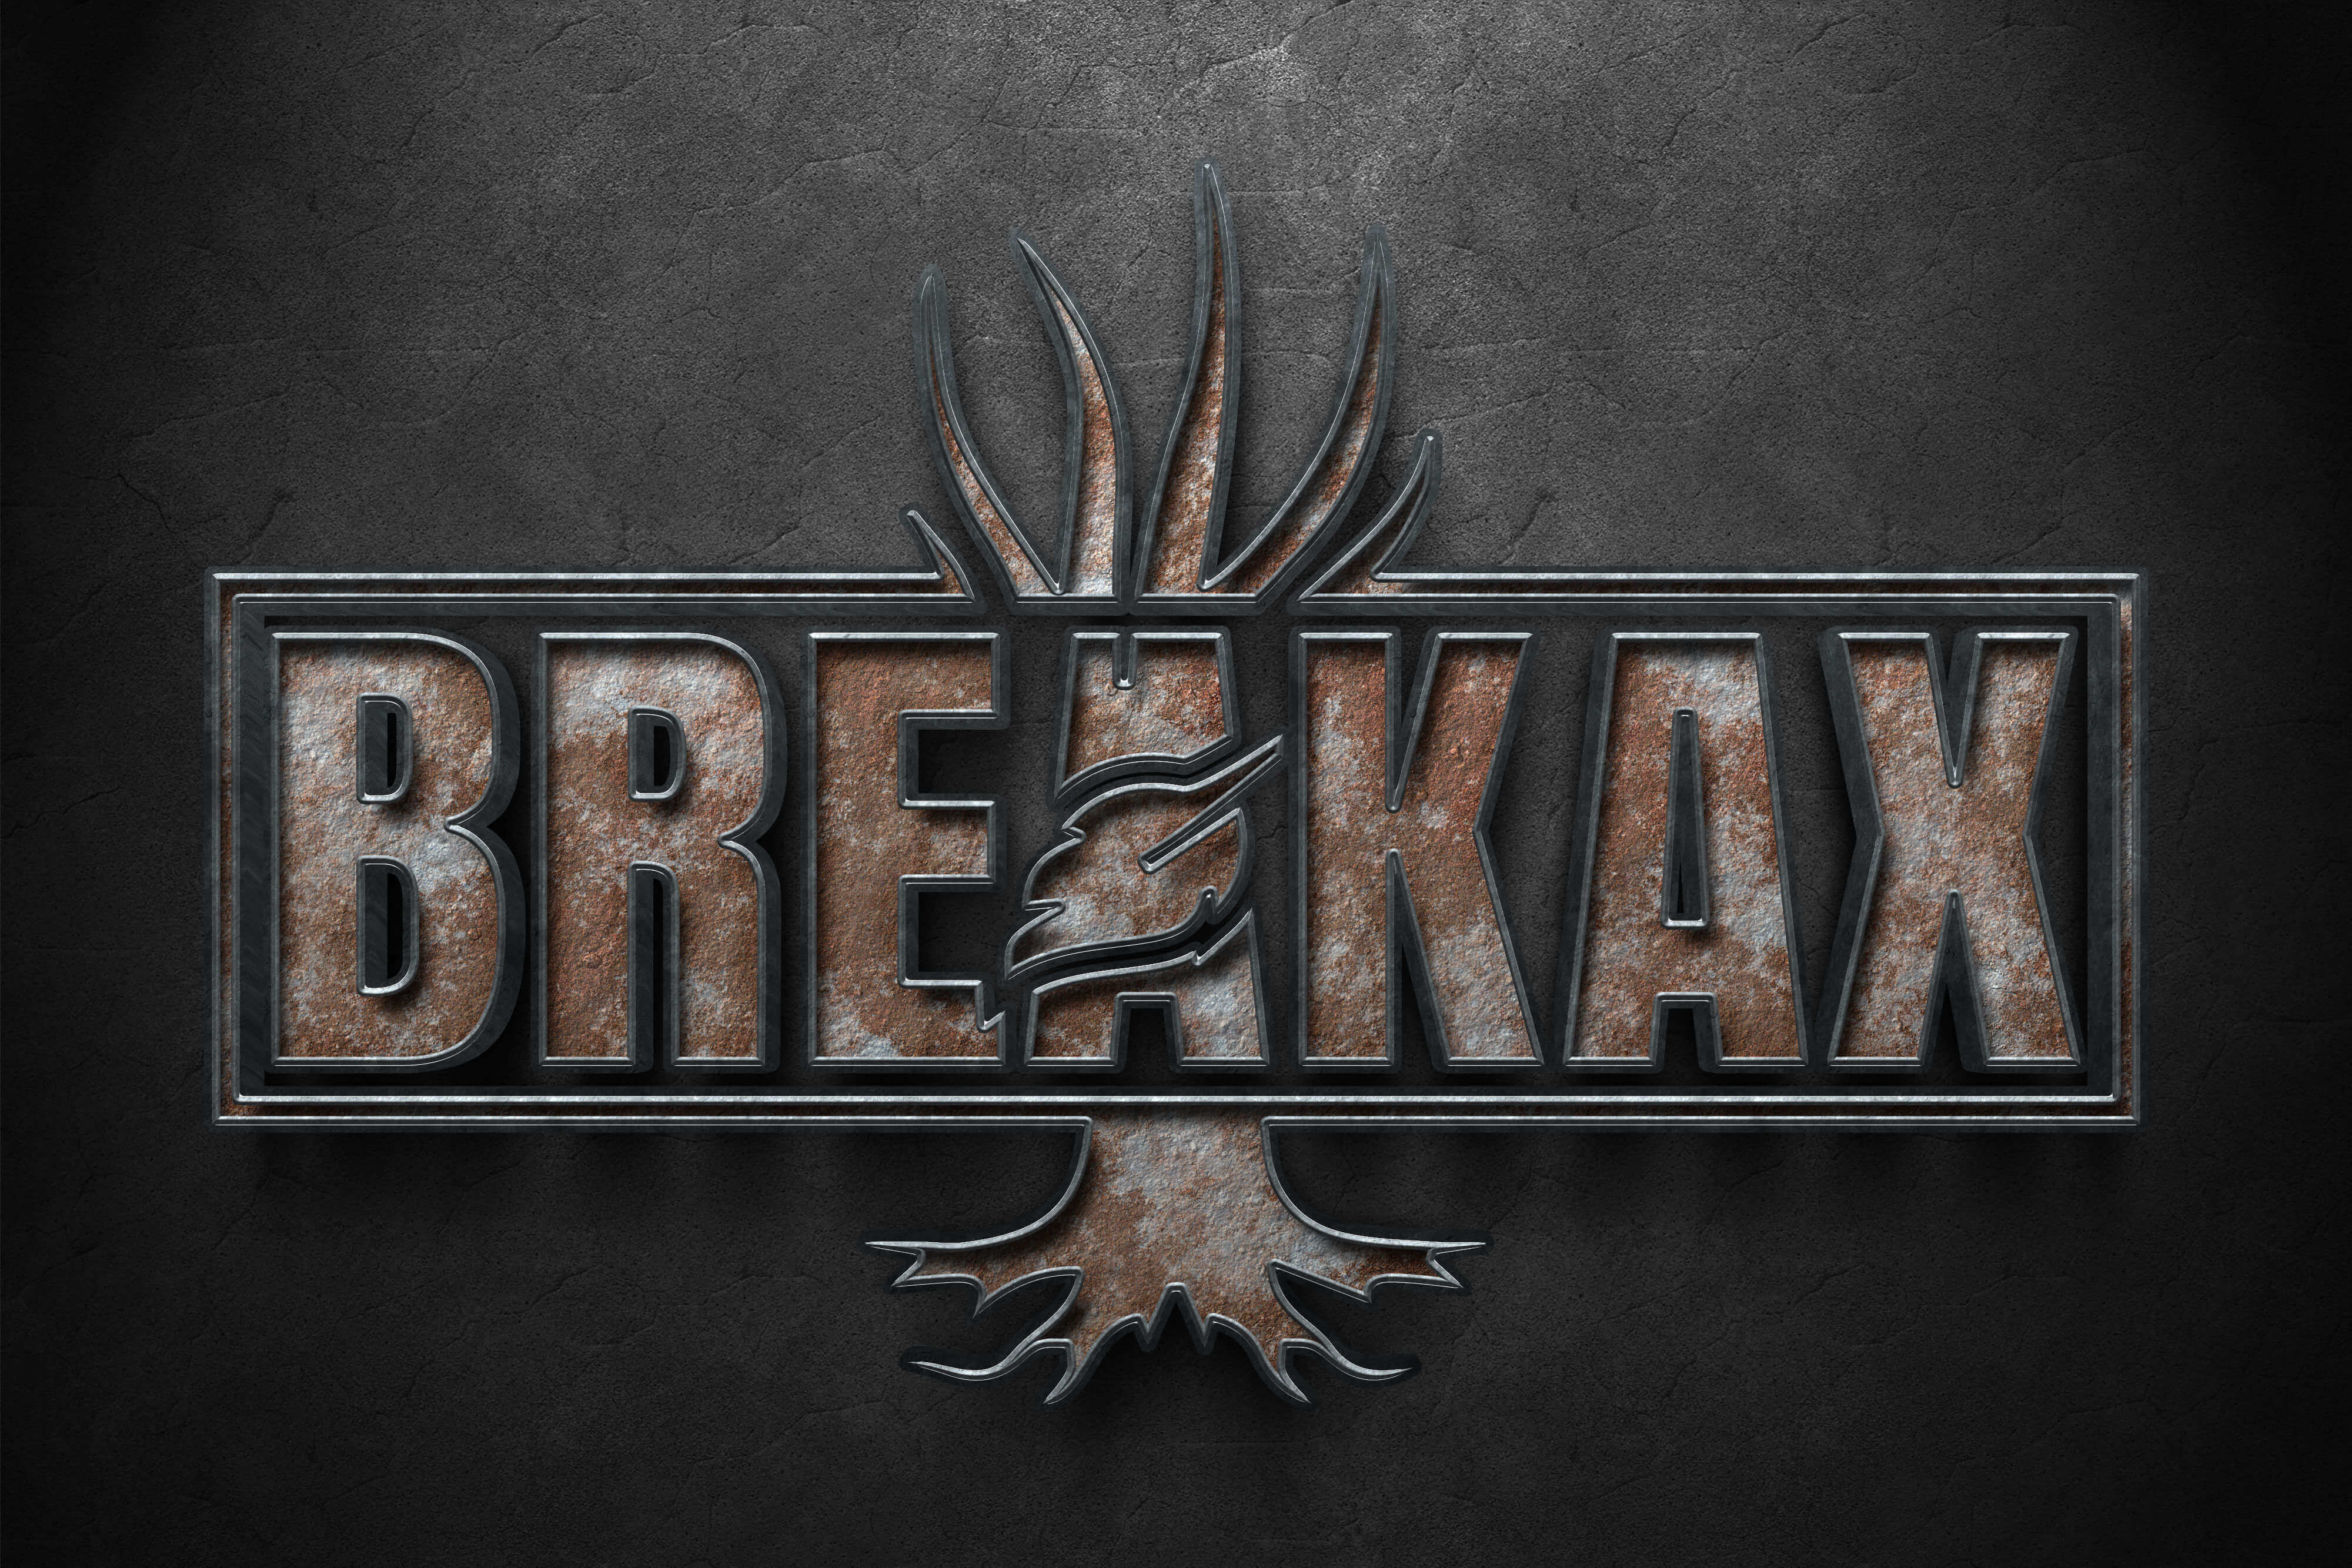 Breakax